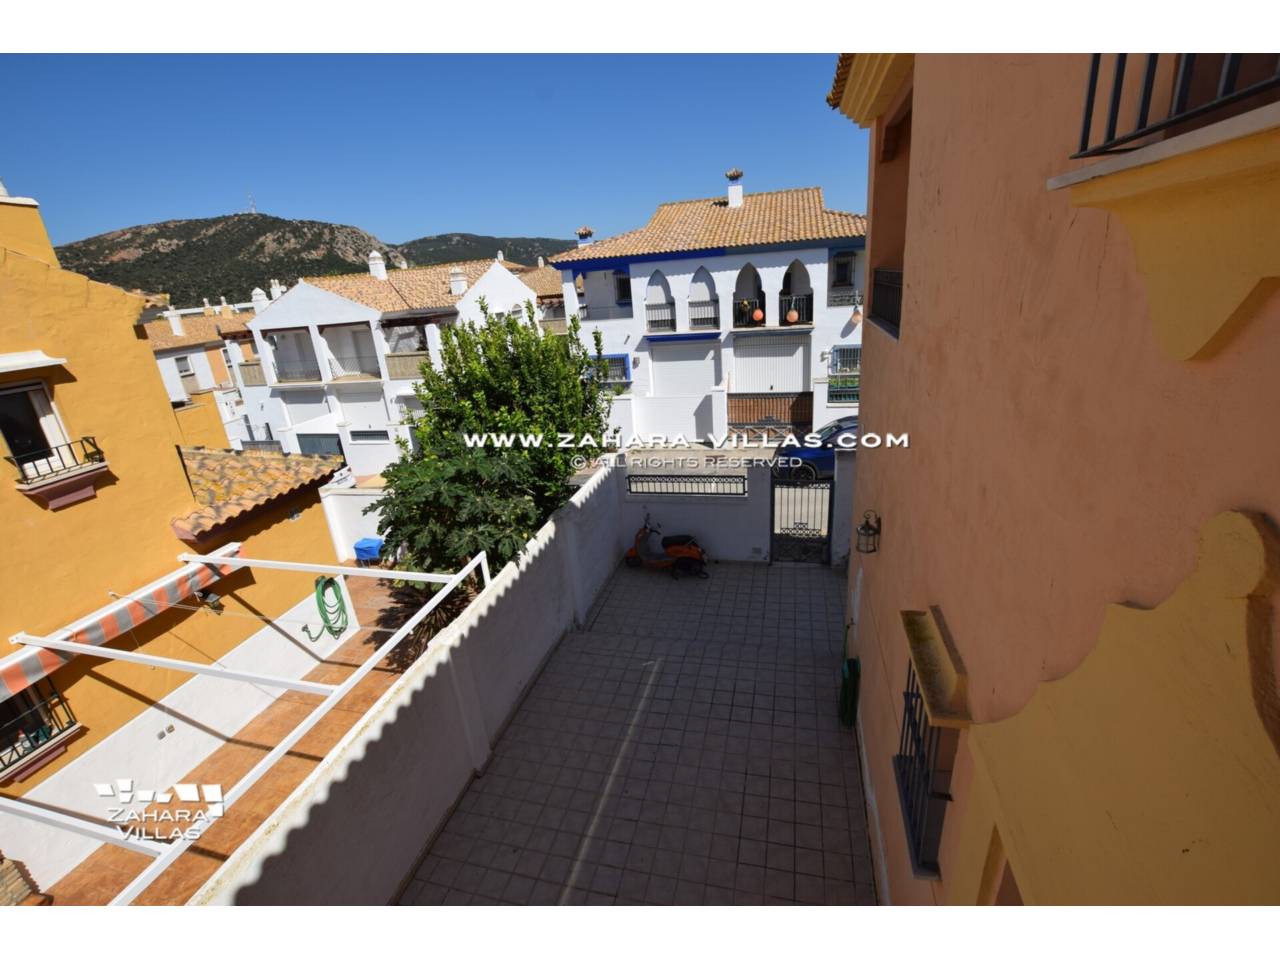 Imagen 12 de Semi-detached house for sale in Zahara de los Atunes, Costa de la Luz